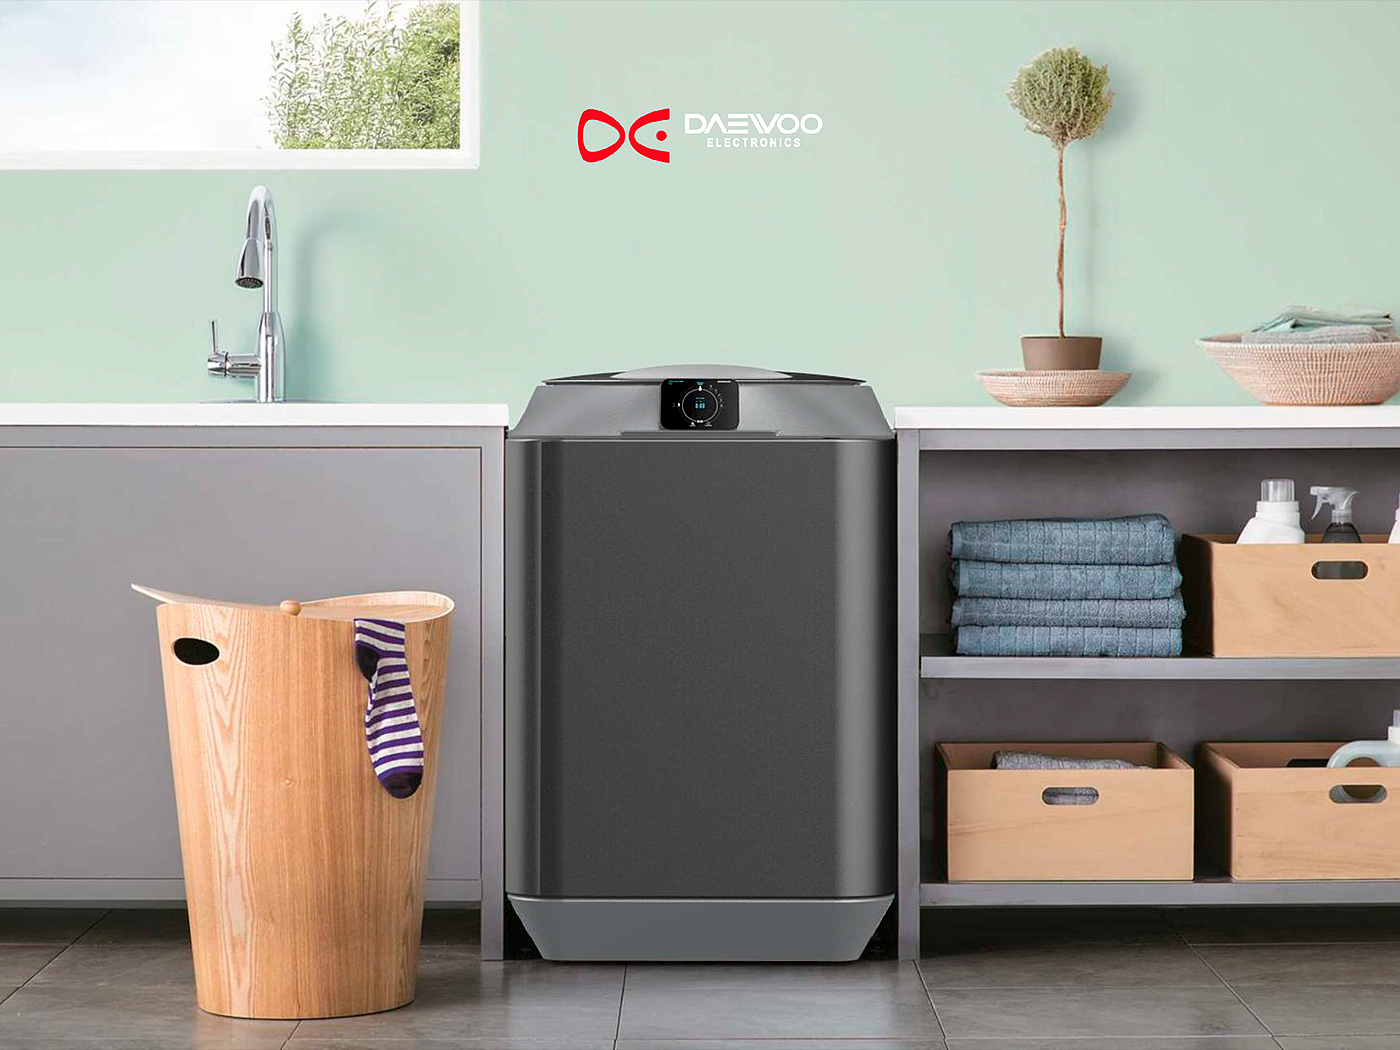 Daewoo，洗衣机，工业设计，全新体验，触摸屏，